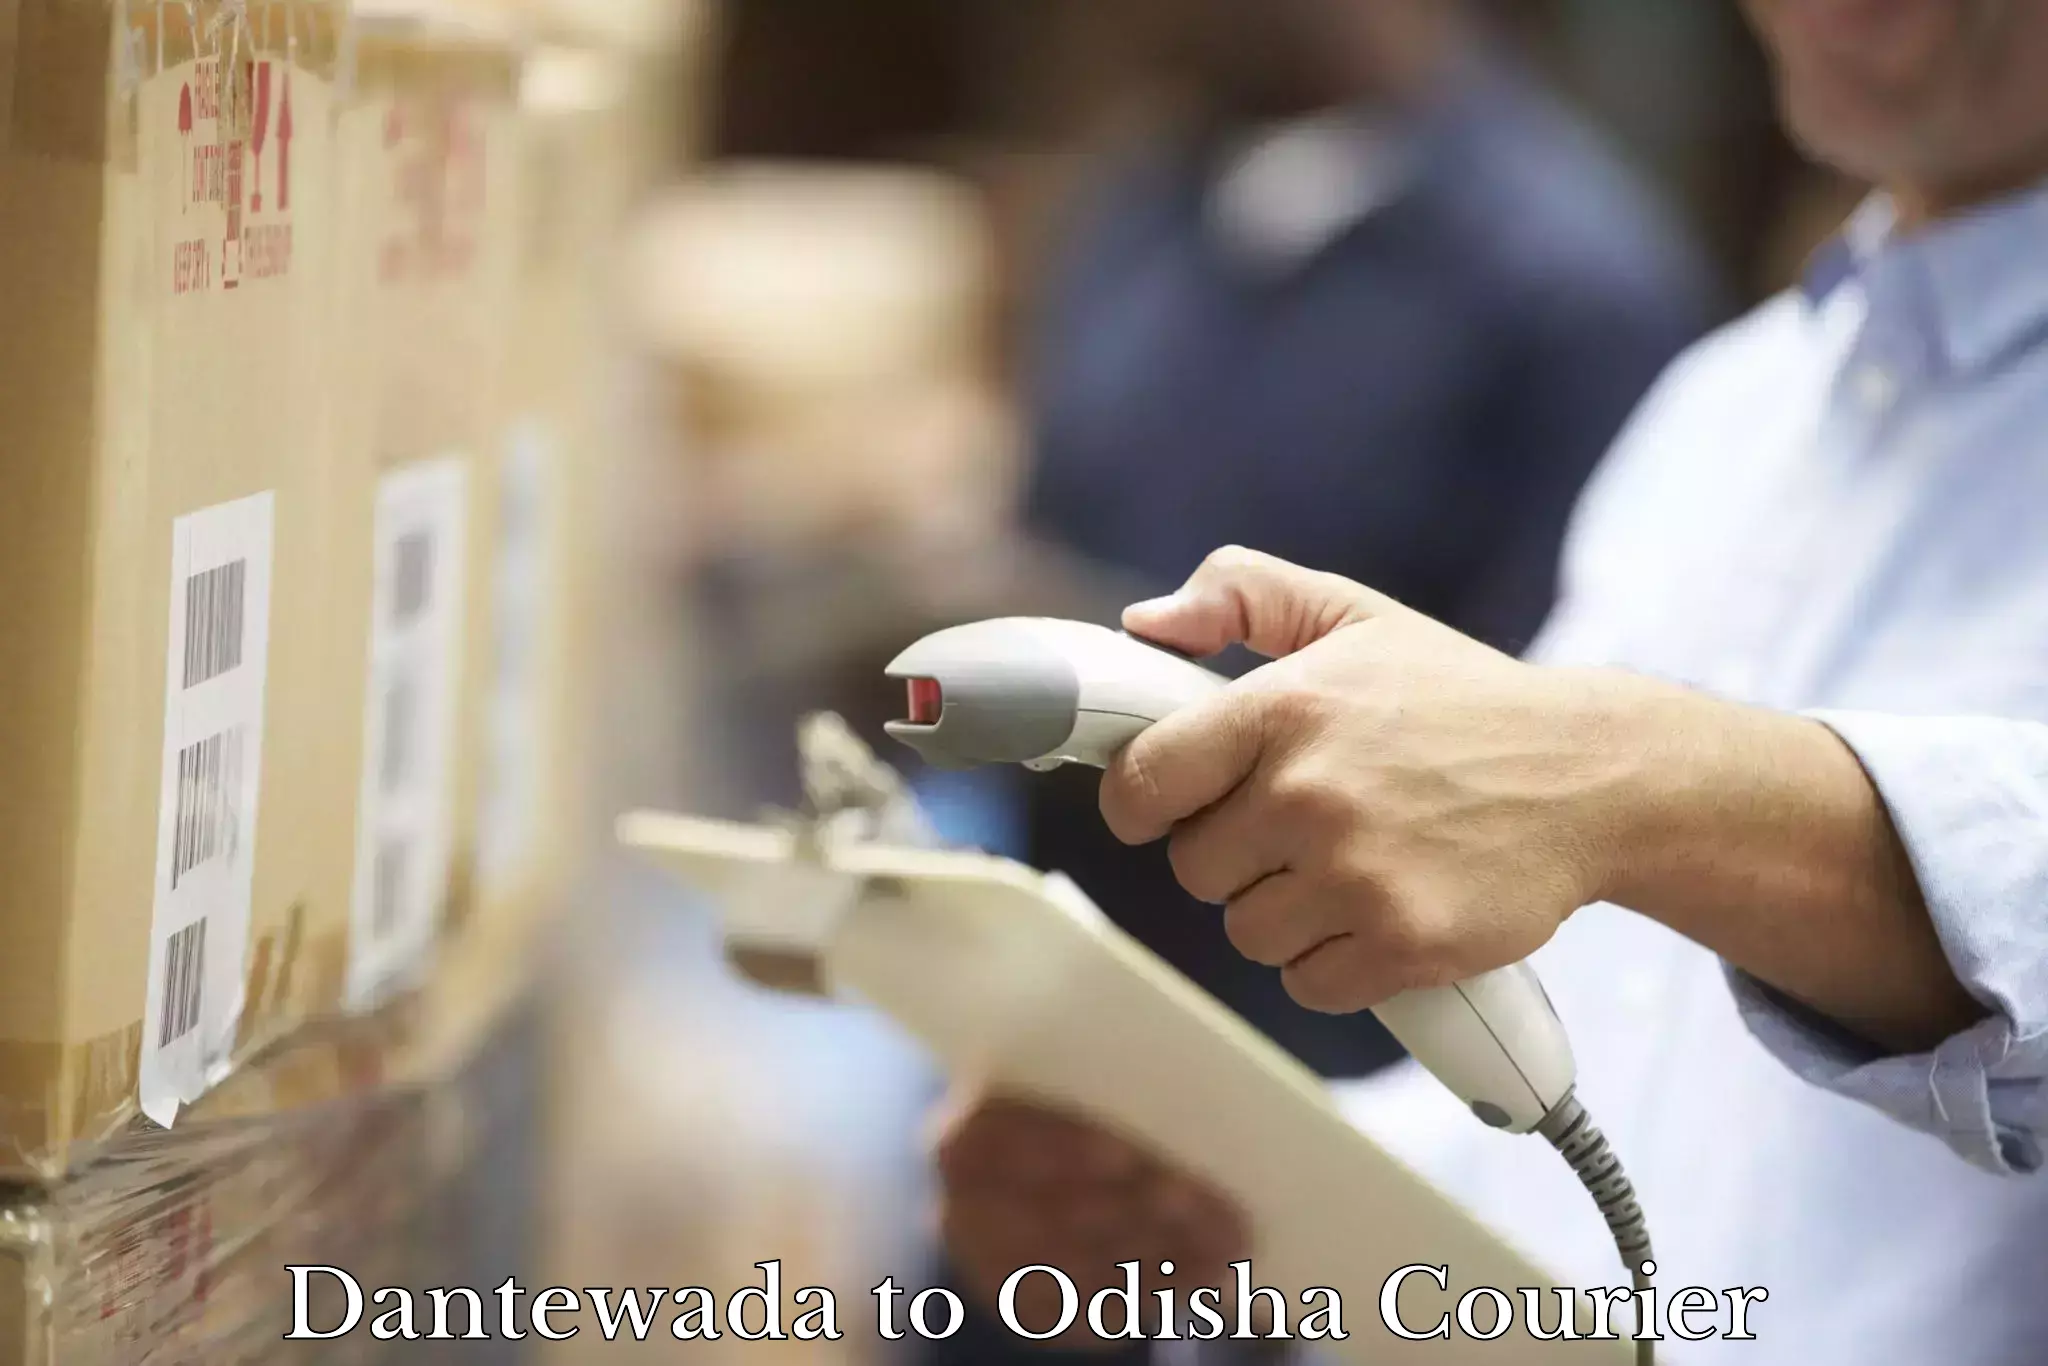 Digital courier platforms Dantewada to Odisha